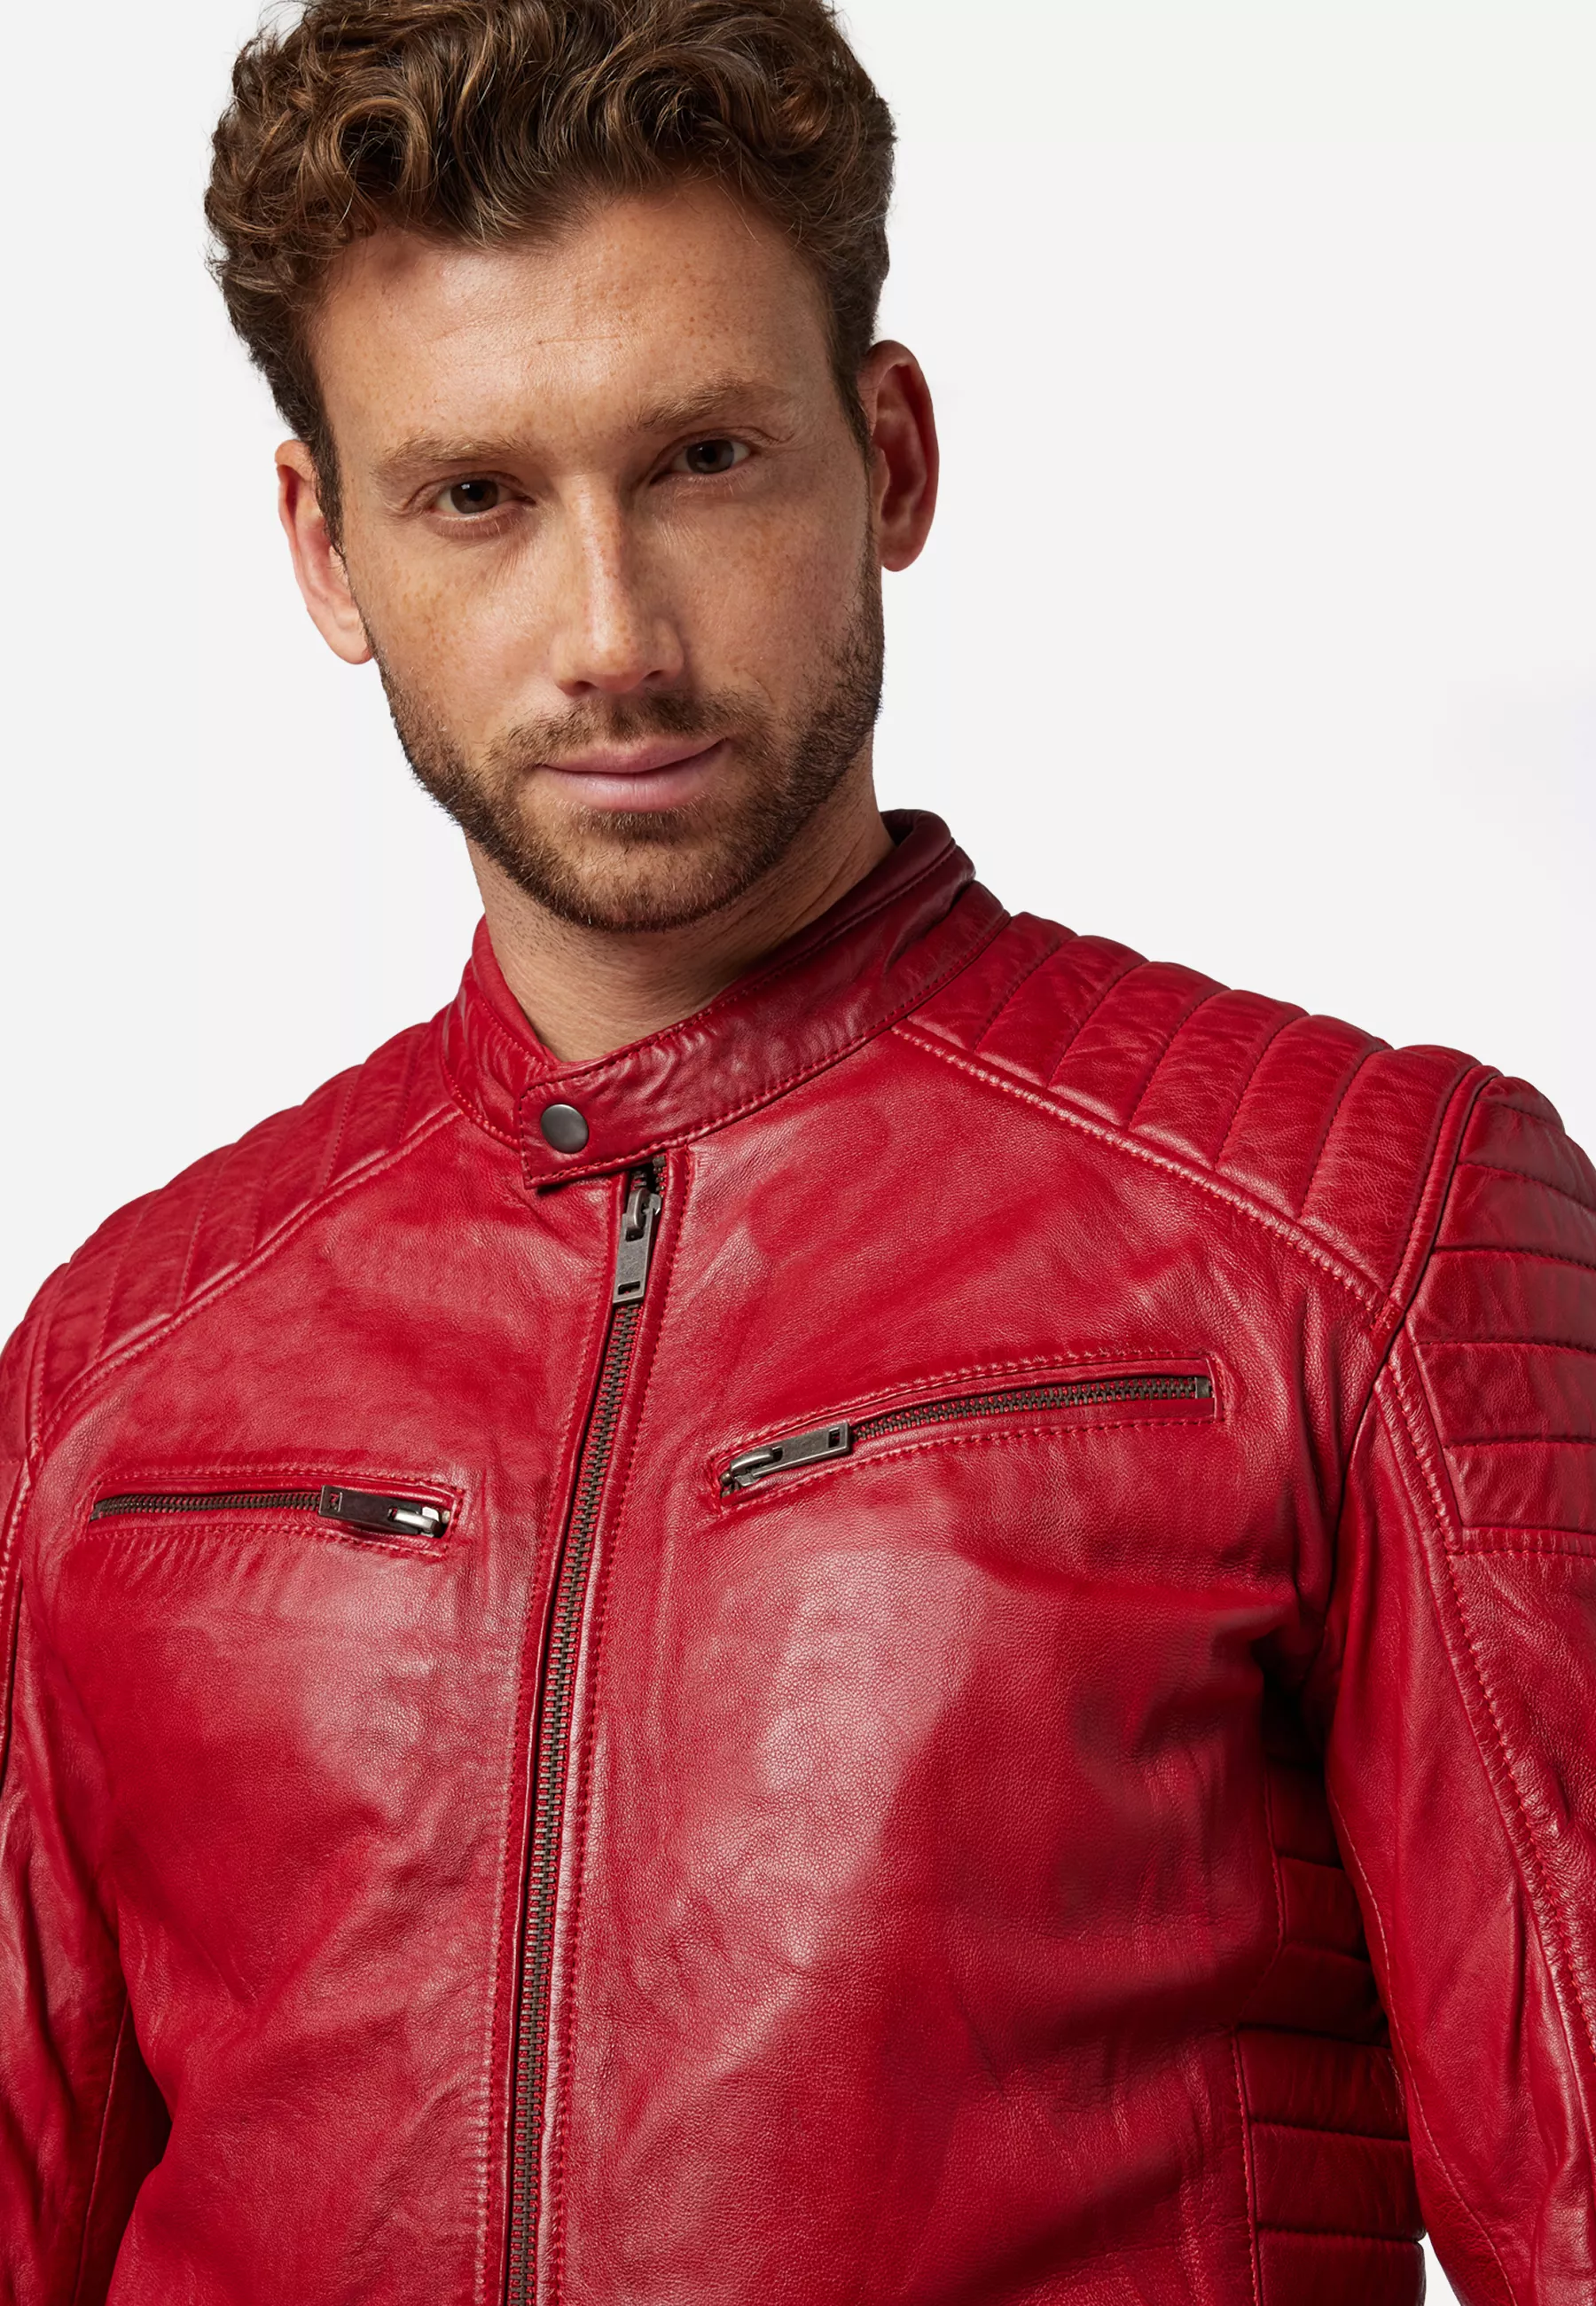 Herren Lederjacke Cooper in Rot von Ricano, Detailansicht am Model vom Kragen und den Brusttaschen